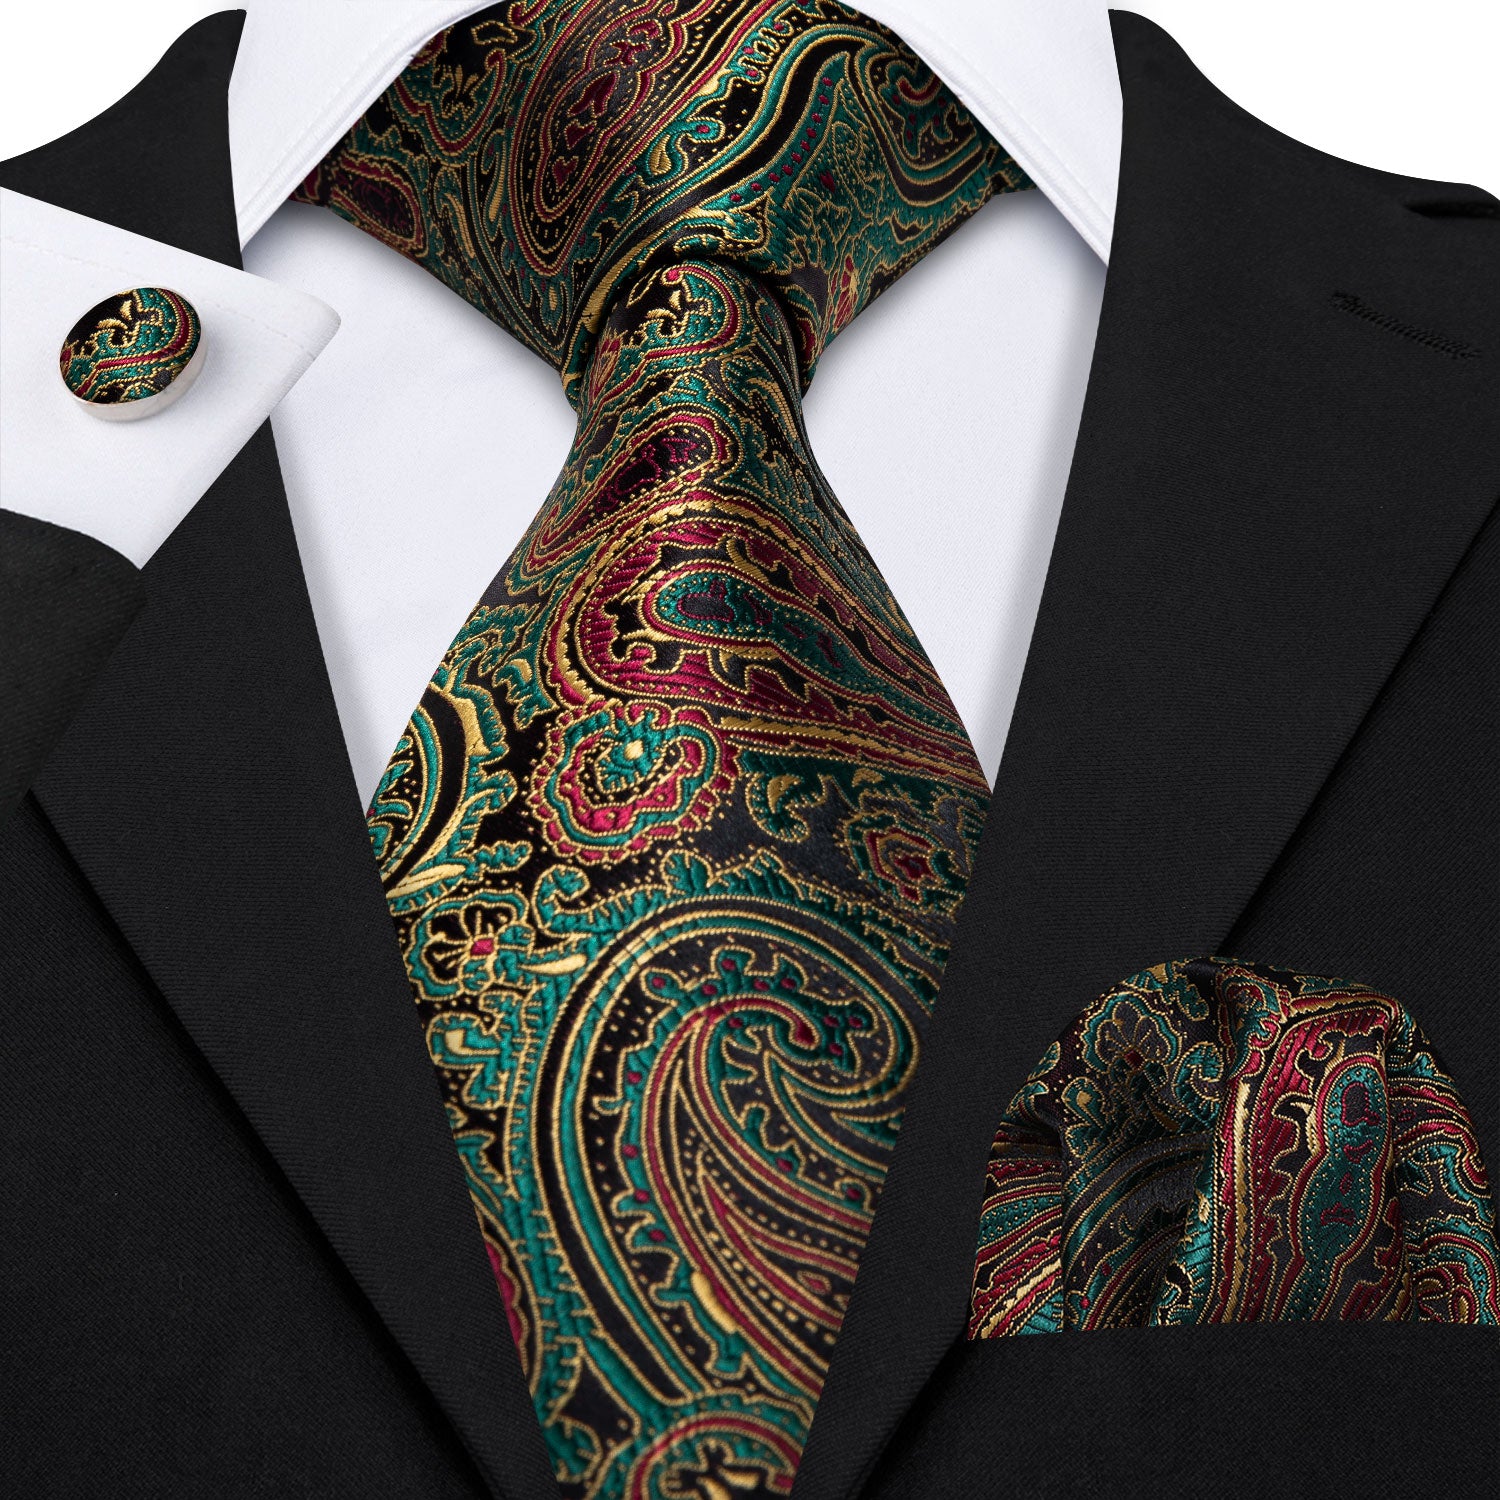 Barry.wang Green Tie Brown Paisley Silk Men's Tie Hanky Cufflinks Set